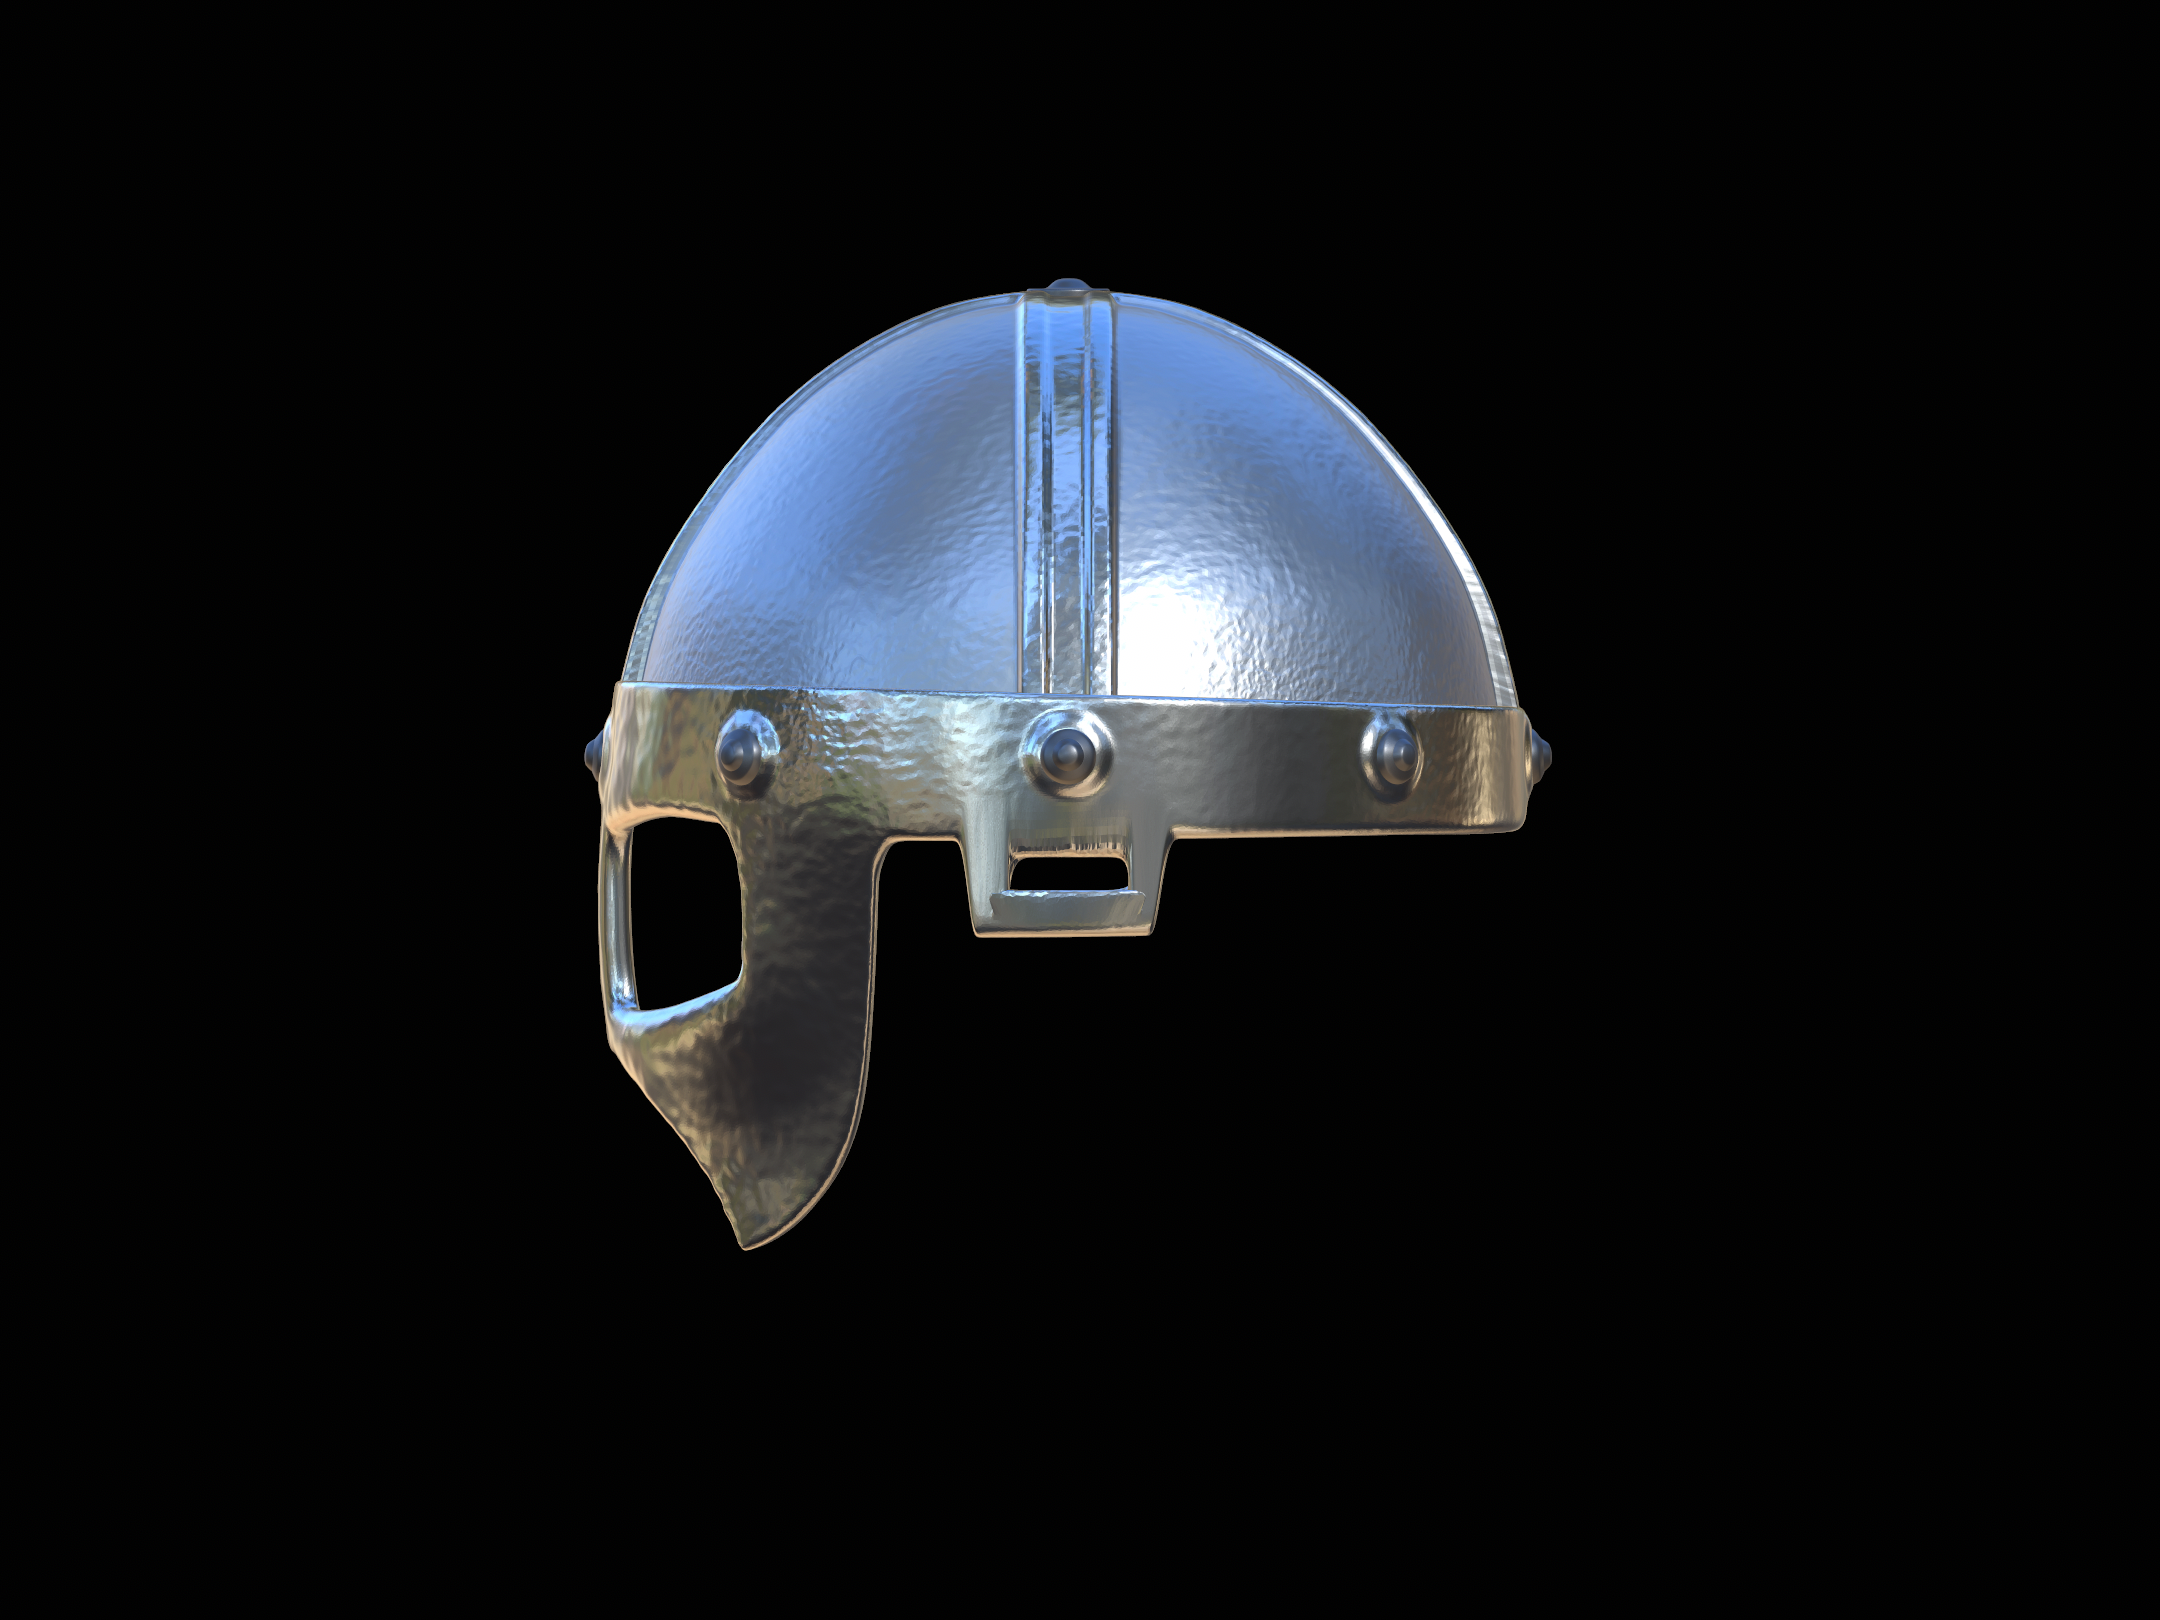 ancient vikings helmet